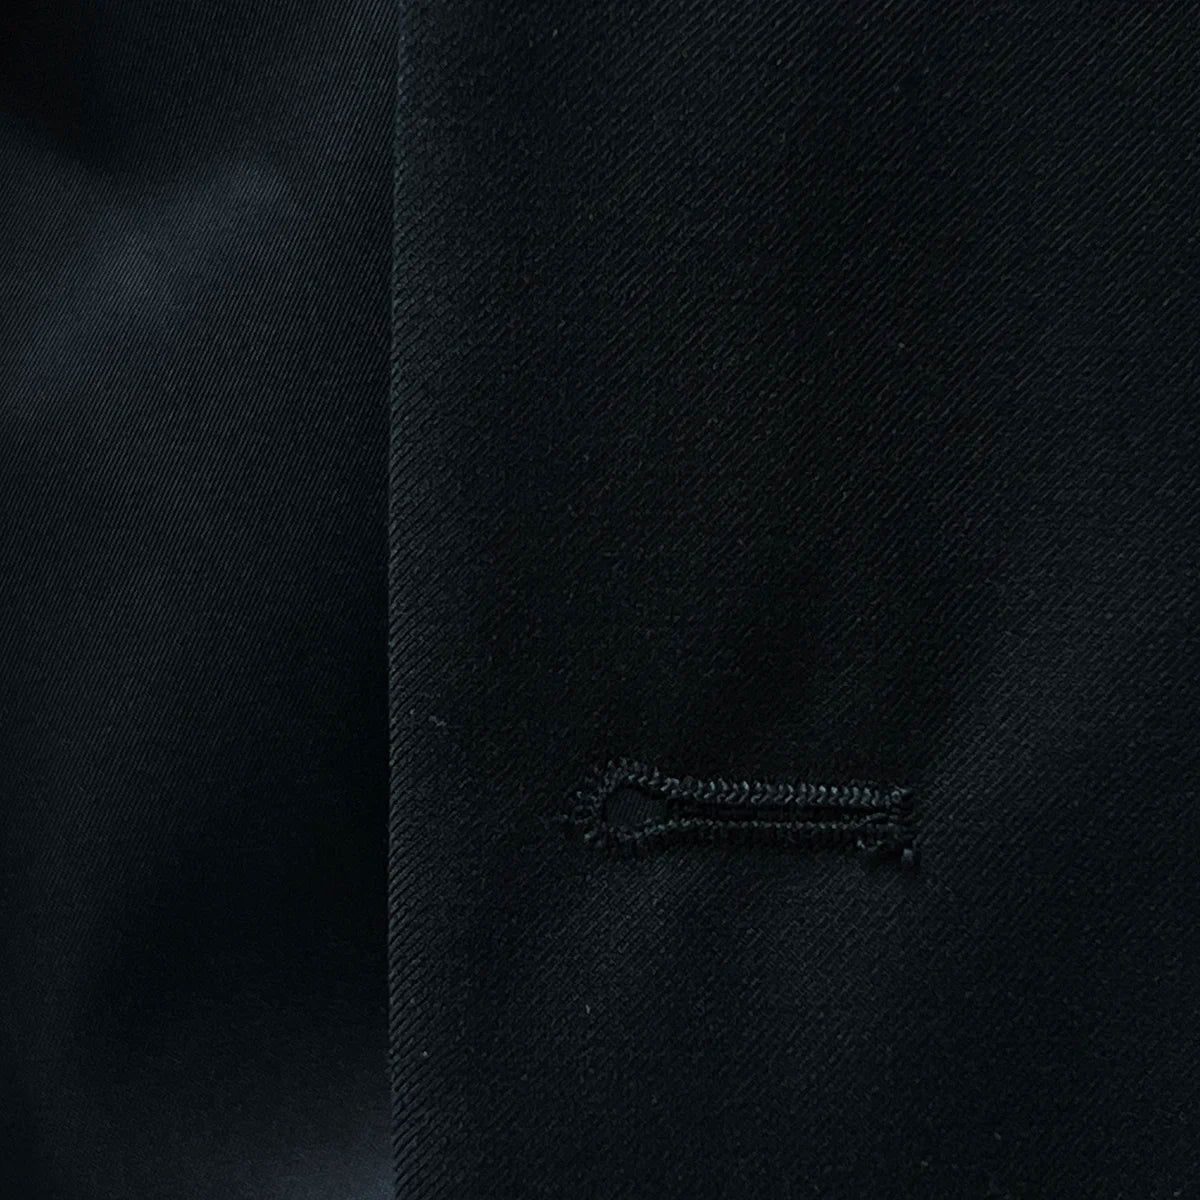 buttonholes adding a unique touch to a classic black men's suit.